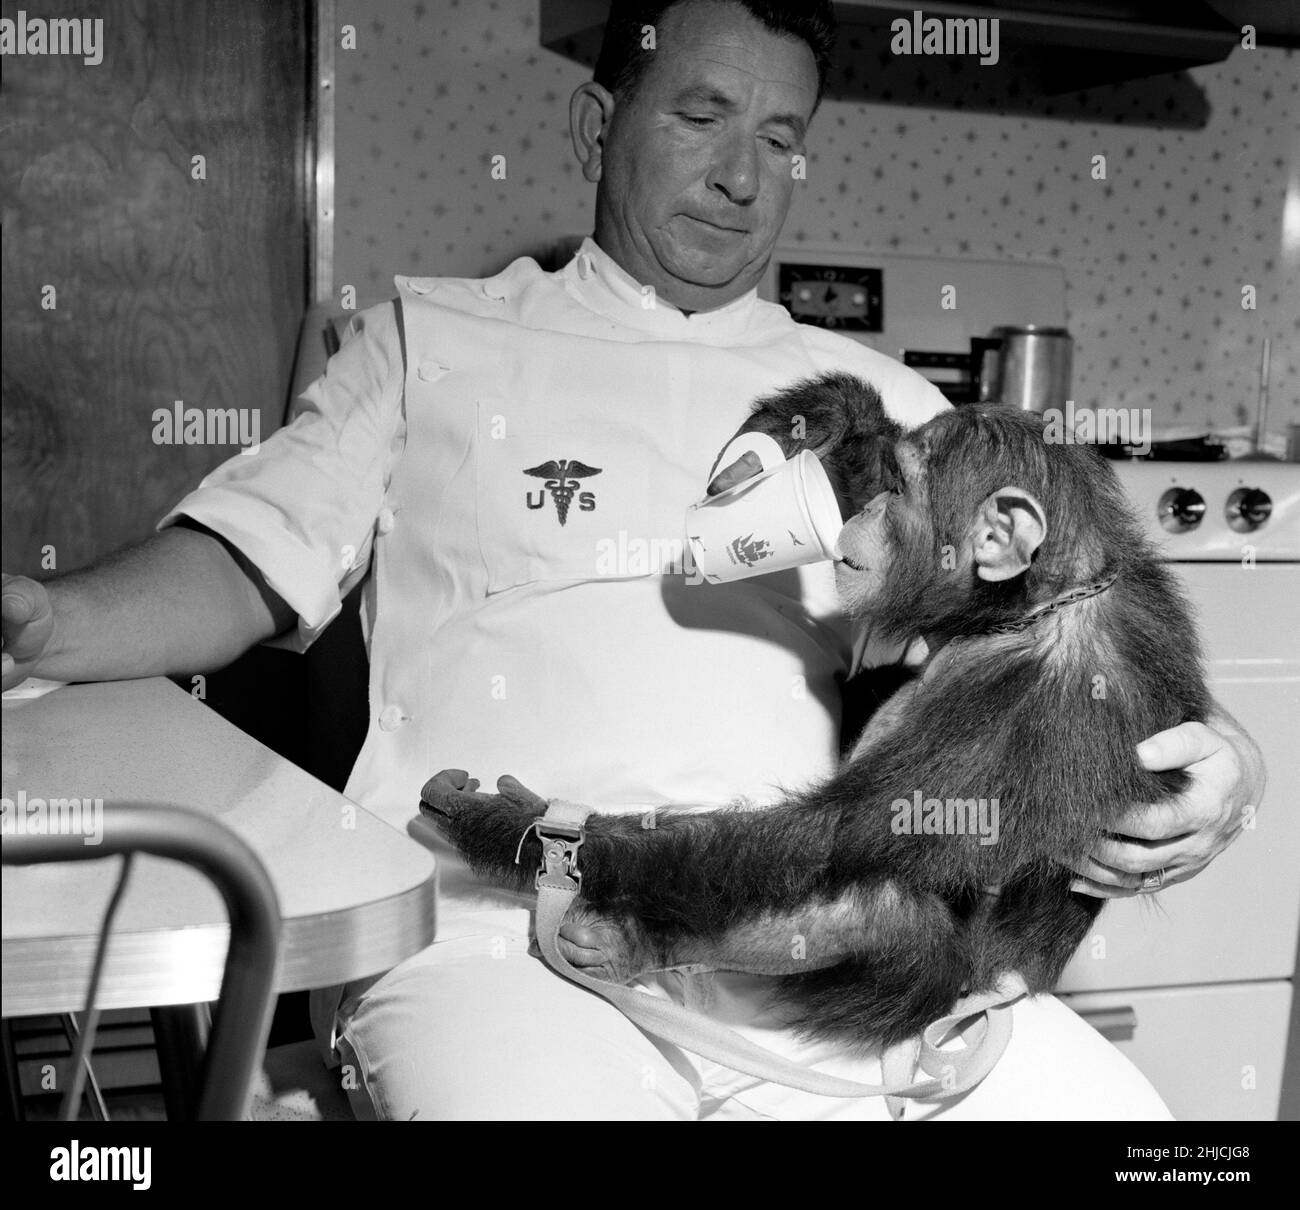 Enos mit seinem Handler, der aus dem Becher trinkt. Enos (d. 4. November 1962) war der 2nd ins All gestartete Schimpansen und der erste Schimpansen, der die Erdumlaufbahn erreicht hat. Enos' Flug fand am 29. November 1961 statt. Sein Training war für ihn intensiver als für seinen Vorgänger Ham, da Enos über längere Zeit Schwerelosigkeit und höheren gs ausgesetzt war. Seine Ausbildung beinhaltete Psychomotorunterricht und Flugzeugflüge. Enos starb an einer durch Shigellose bedingten Dysenterie, die gegen damals bekannte Antibiotika resistent war. Pathologen berichteten über keine Symptome, die auf seinen Weltraumflug zurückzuführen oder mit ihm in Zusammenhang stehen könnten. Stockfoto